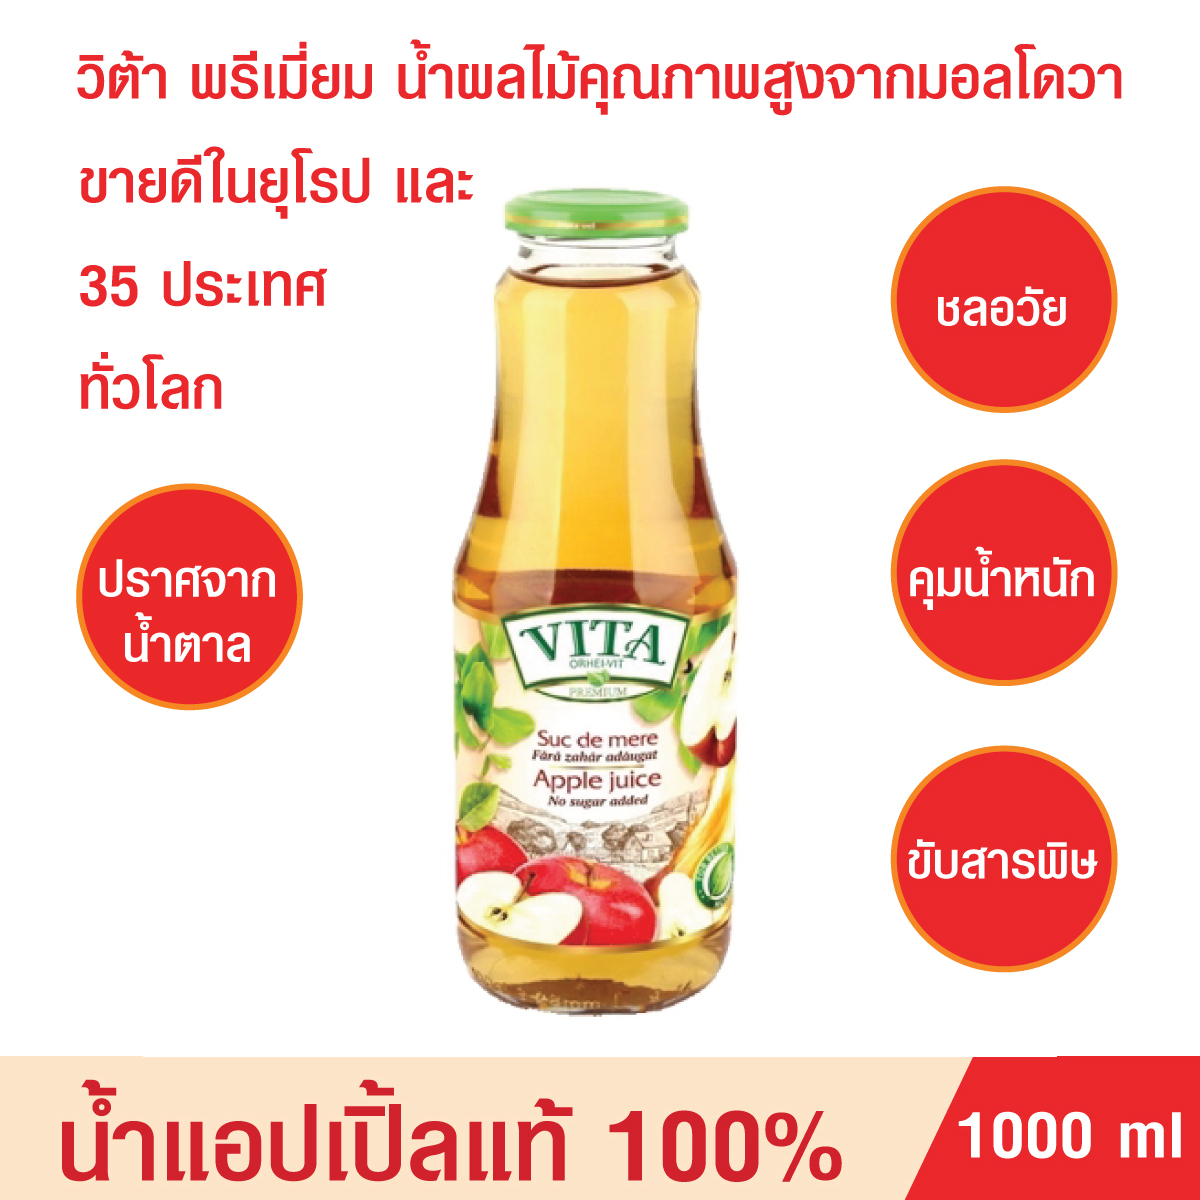 น้ำผลไม้แบบขวด VITA ORHEI-VIT Apple Juice No sugar added 1000 mL น้ำแอปเปิ้ลแท้ 100% ไม่ผสมน้ำตาล น้ำผลไม้ช่วยชะลอวัย คุมน้ำหนัก ขับสารพิษ ขายดีในยุโรป